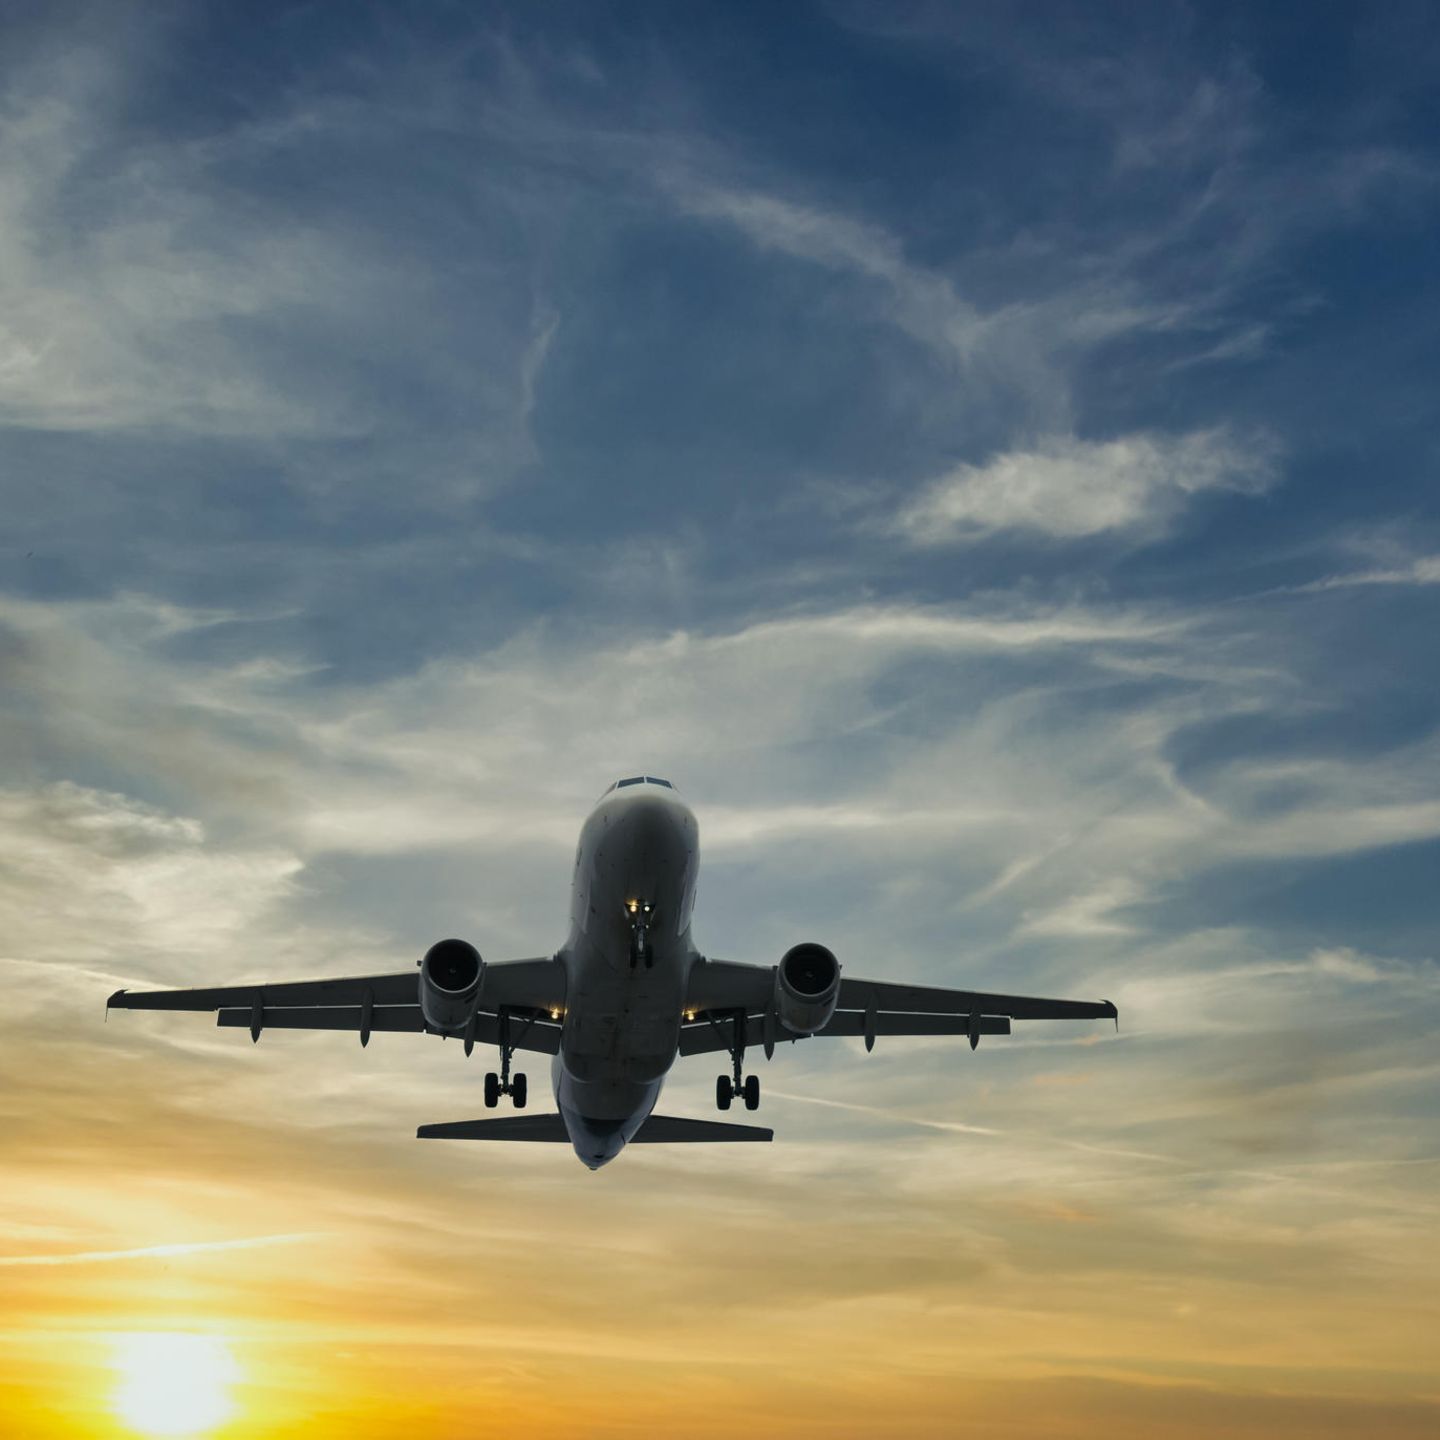 Fliegen: Muss die Reise mit dem Flugzeug teurer werden? - [GEO]